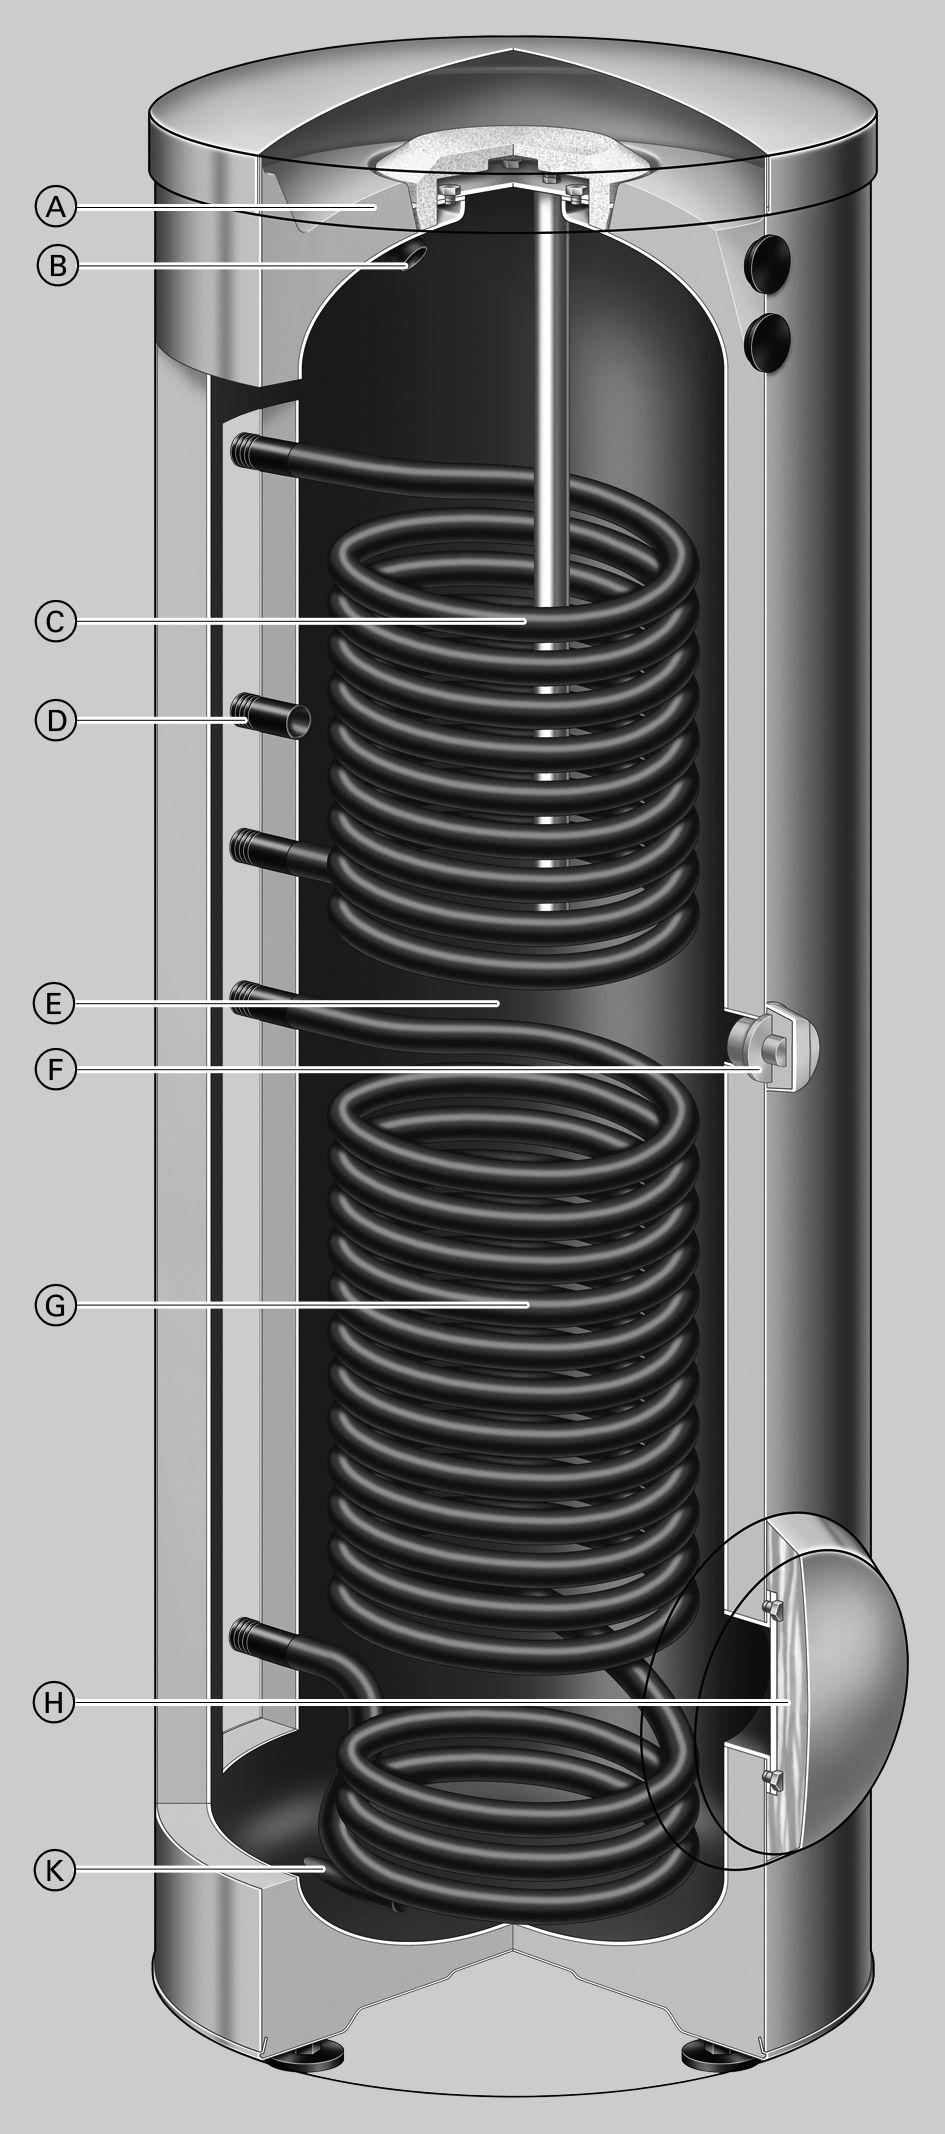 De voordelen op een rij (vervolg) Vitocell 0-B, type CVBB (300 liter) Uiterst efficiënte isolatie rondom B Warm water C Bovenste verwarmingsspiraal tapwater wordt door de verwarmingsspiraal